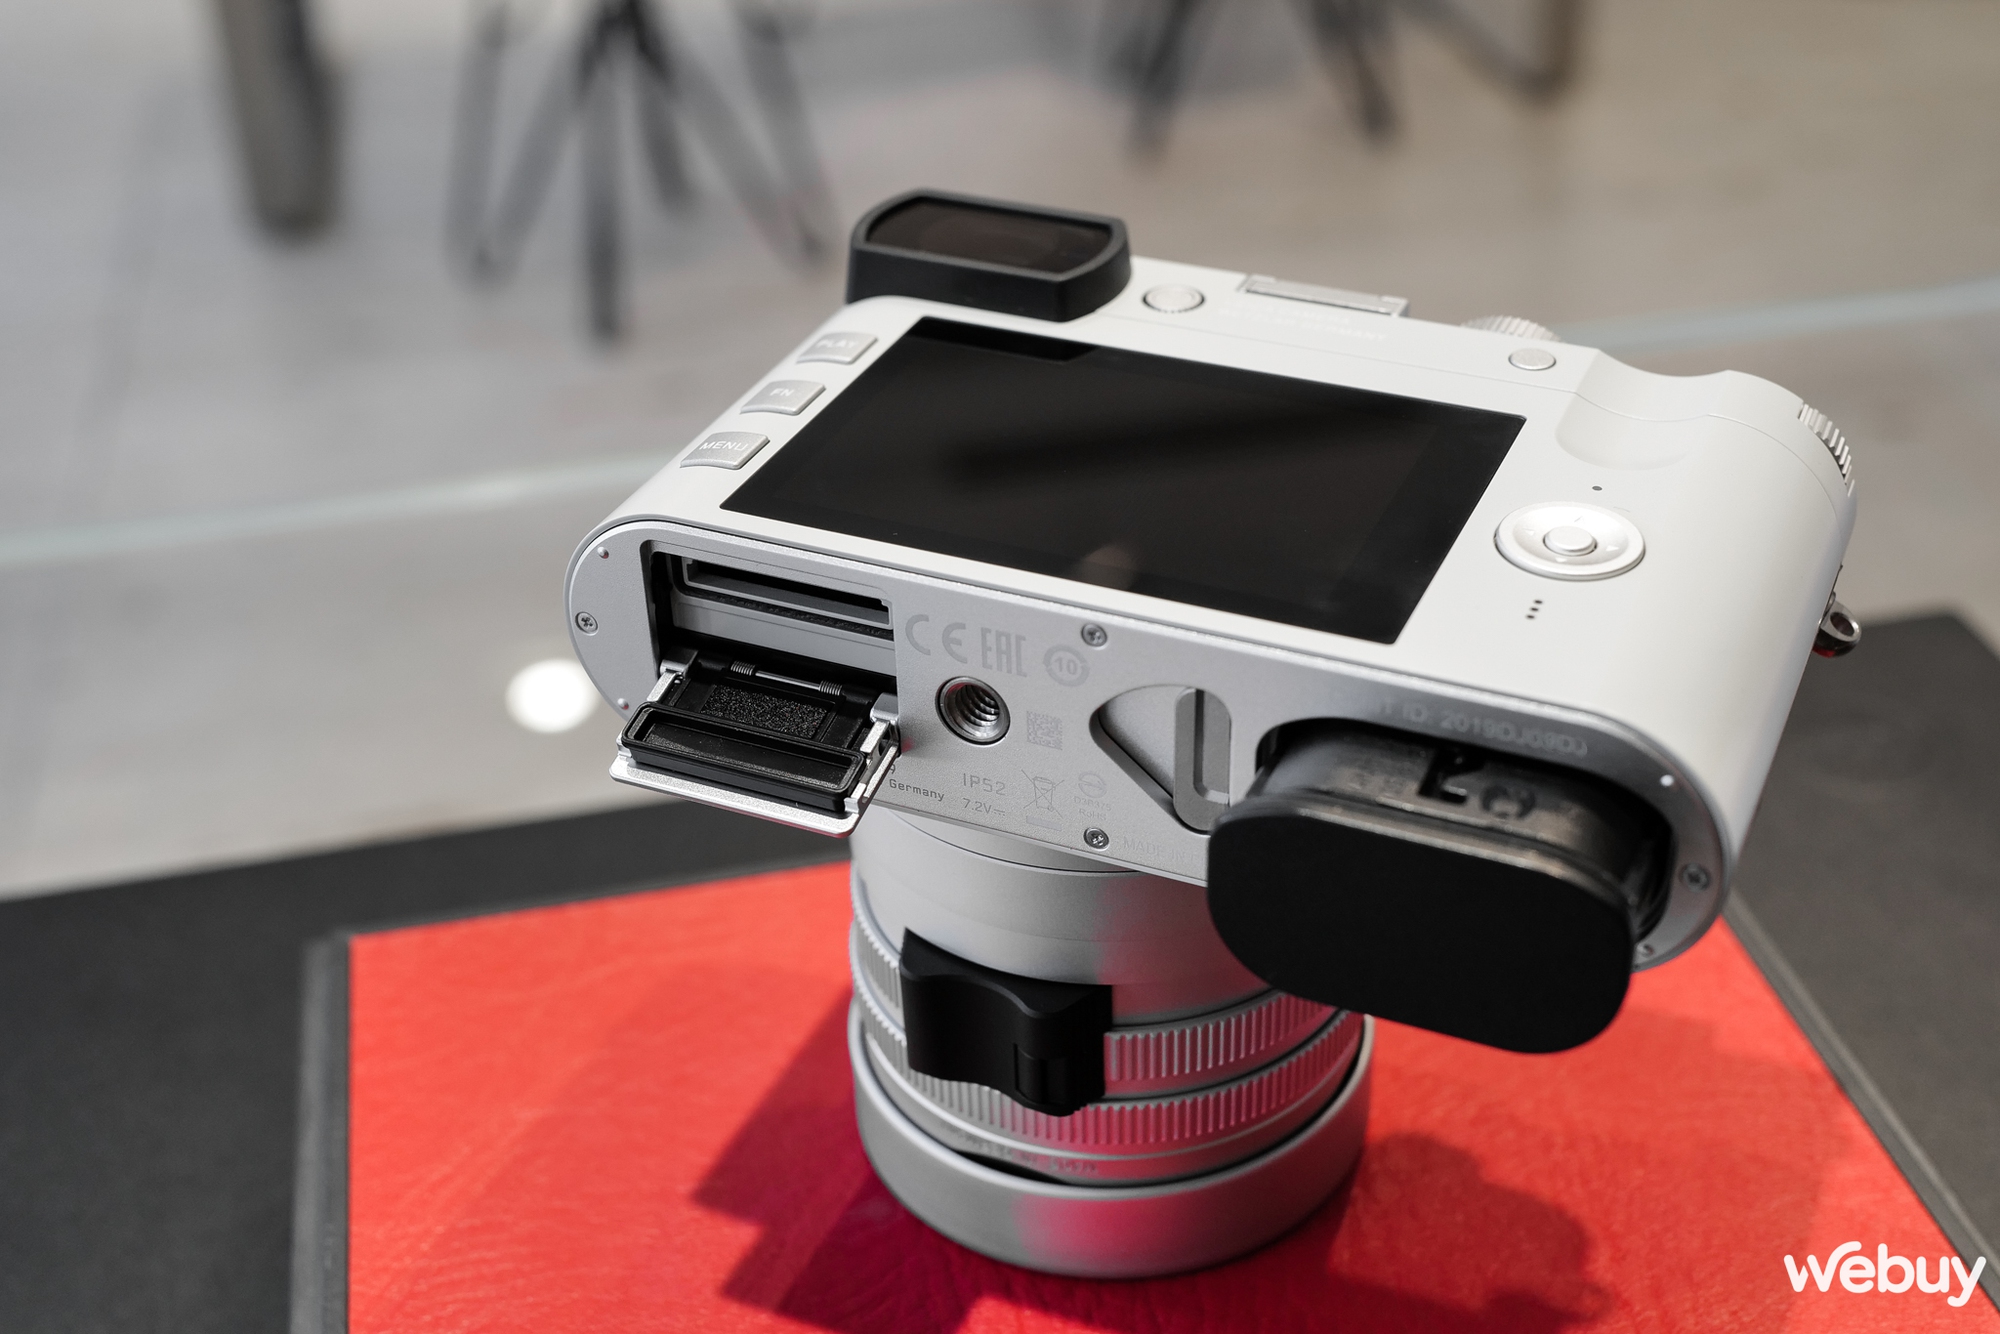 Mở hộp máy ảnh hạng sang Leica Q2 Ghost Edition: Màu xám xi măng, lấy ý tưởng từ đồng hồ Rolex hiếm - Ảnh 12.